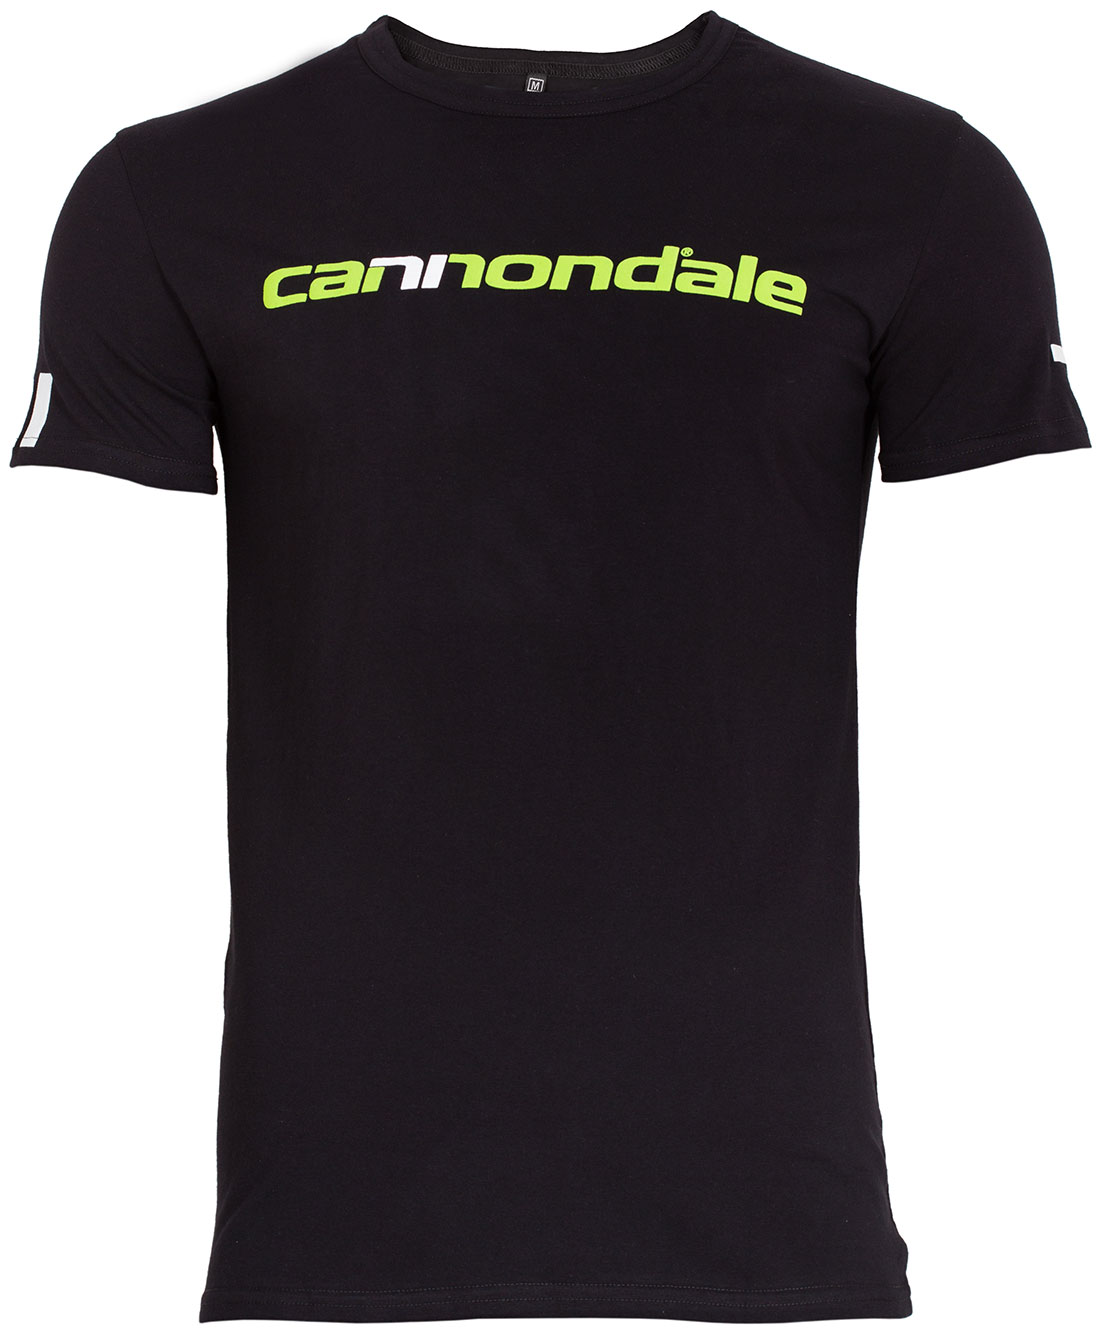 Футболка Cannondale з горизонтальним двоколірним логотипом фото 